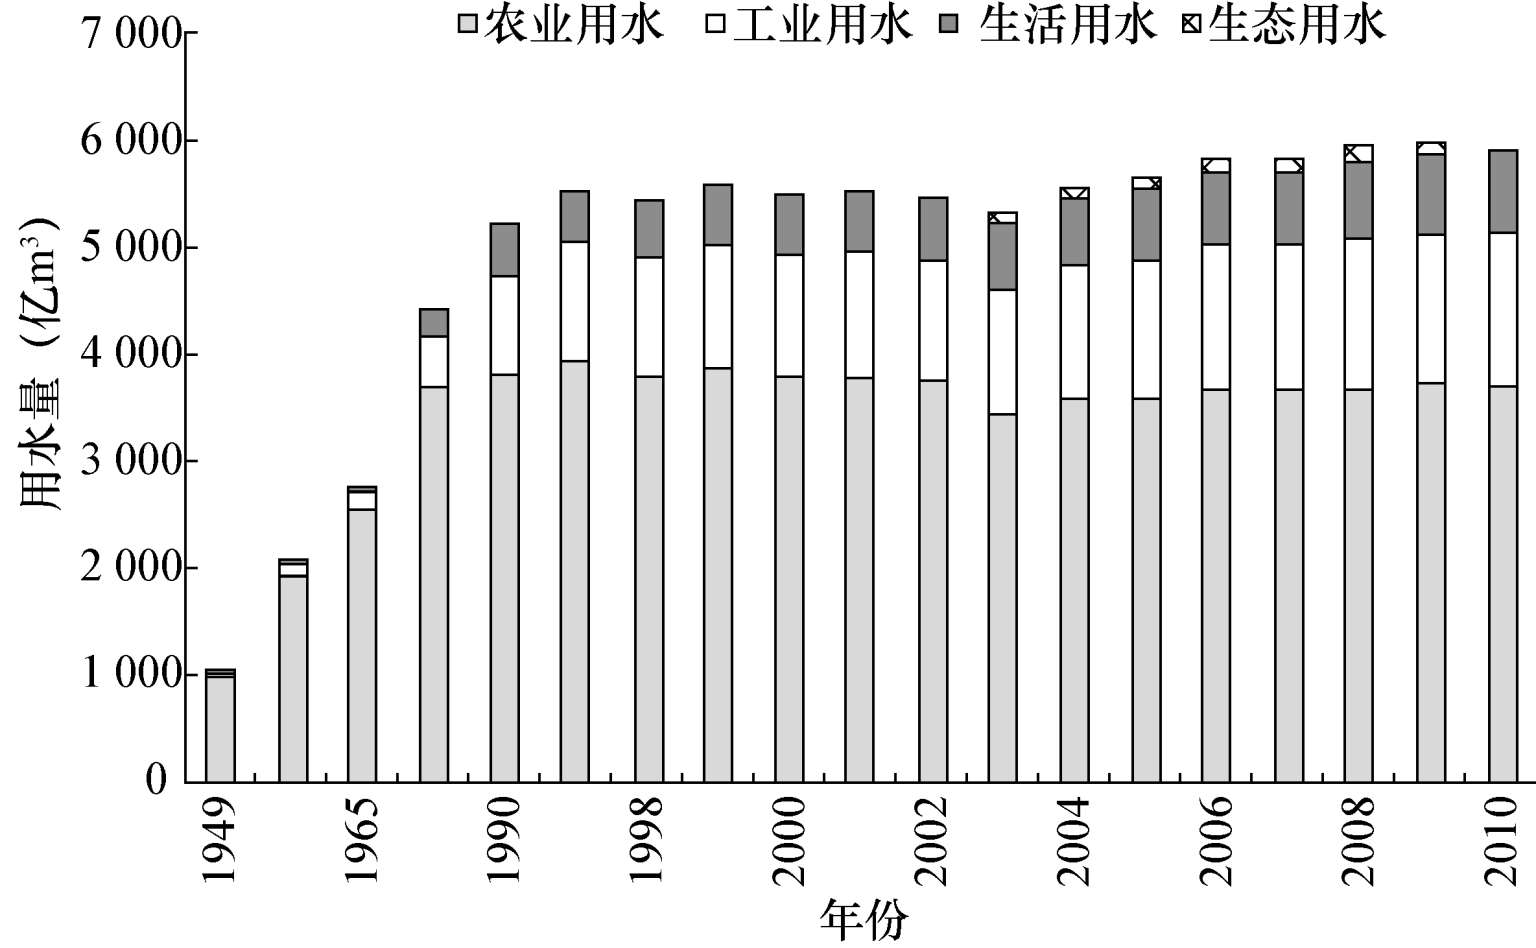 图4—5 我国年度分产业用水量